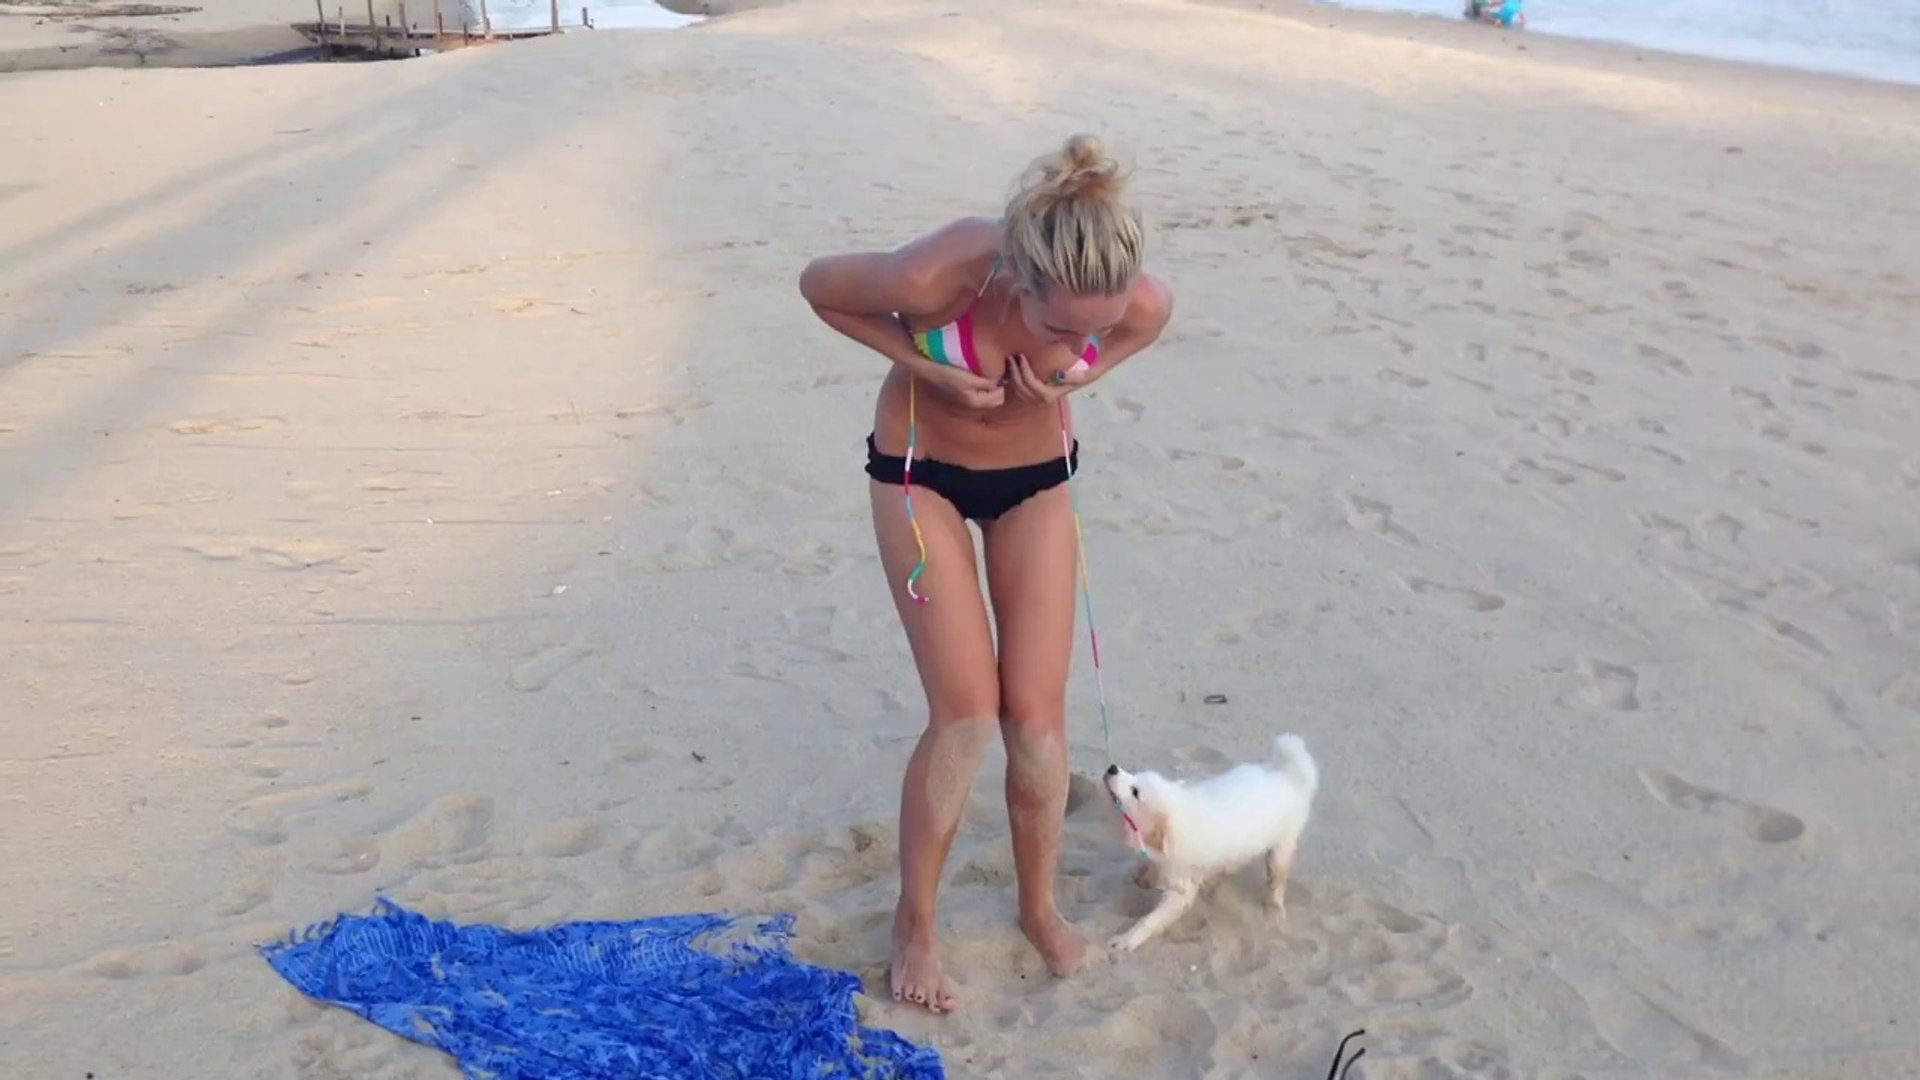 Ютуб юмор видео. Приколы на пляже. Собака стянула купальник. На пляже девушки пьяные. Девушки по собачьи на пляже.